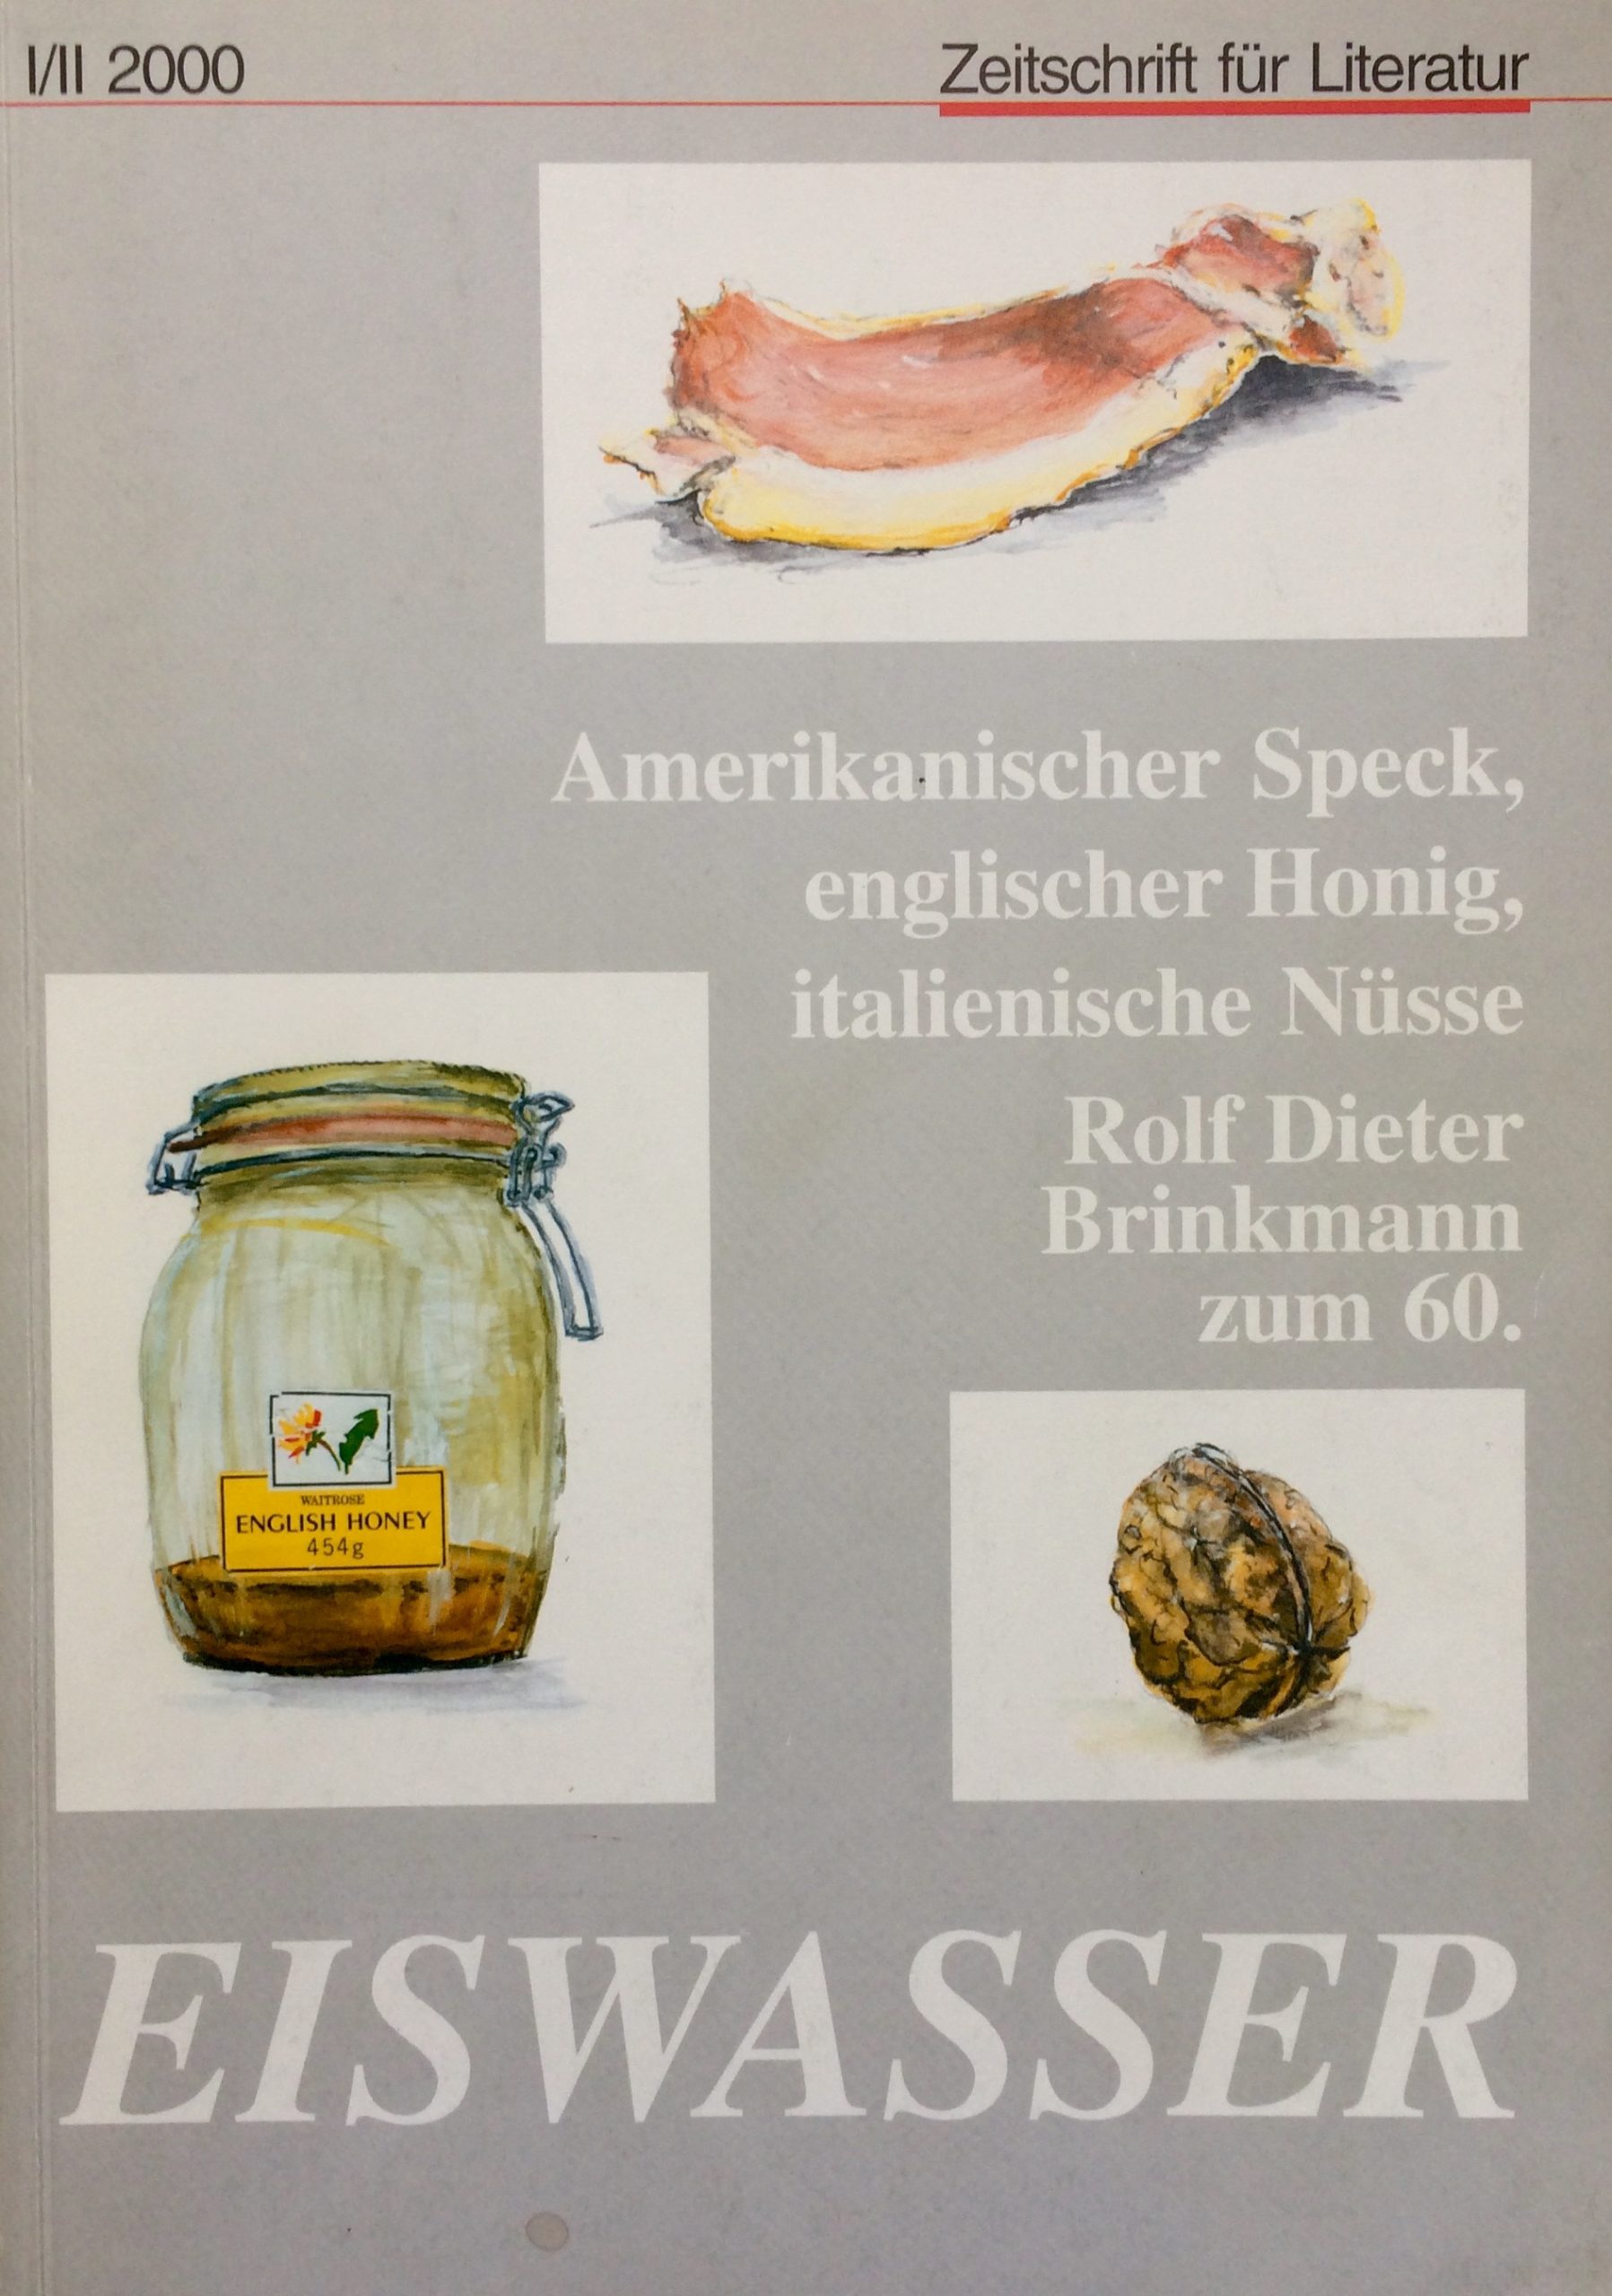 RDB-Cover-EISWASSER-Zeitschrift-für-Literatur-7.-Jahrgang-III-2000